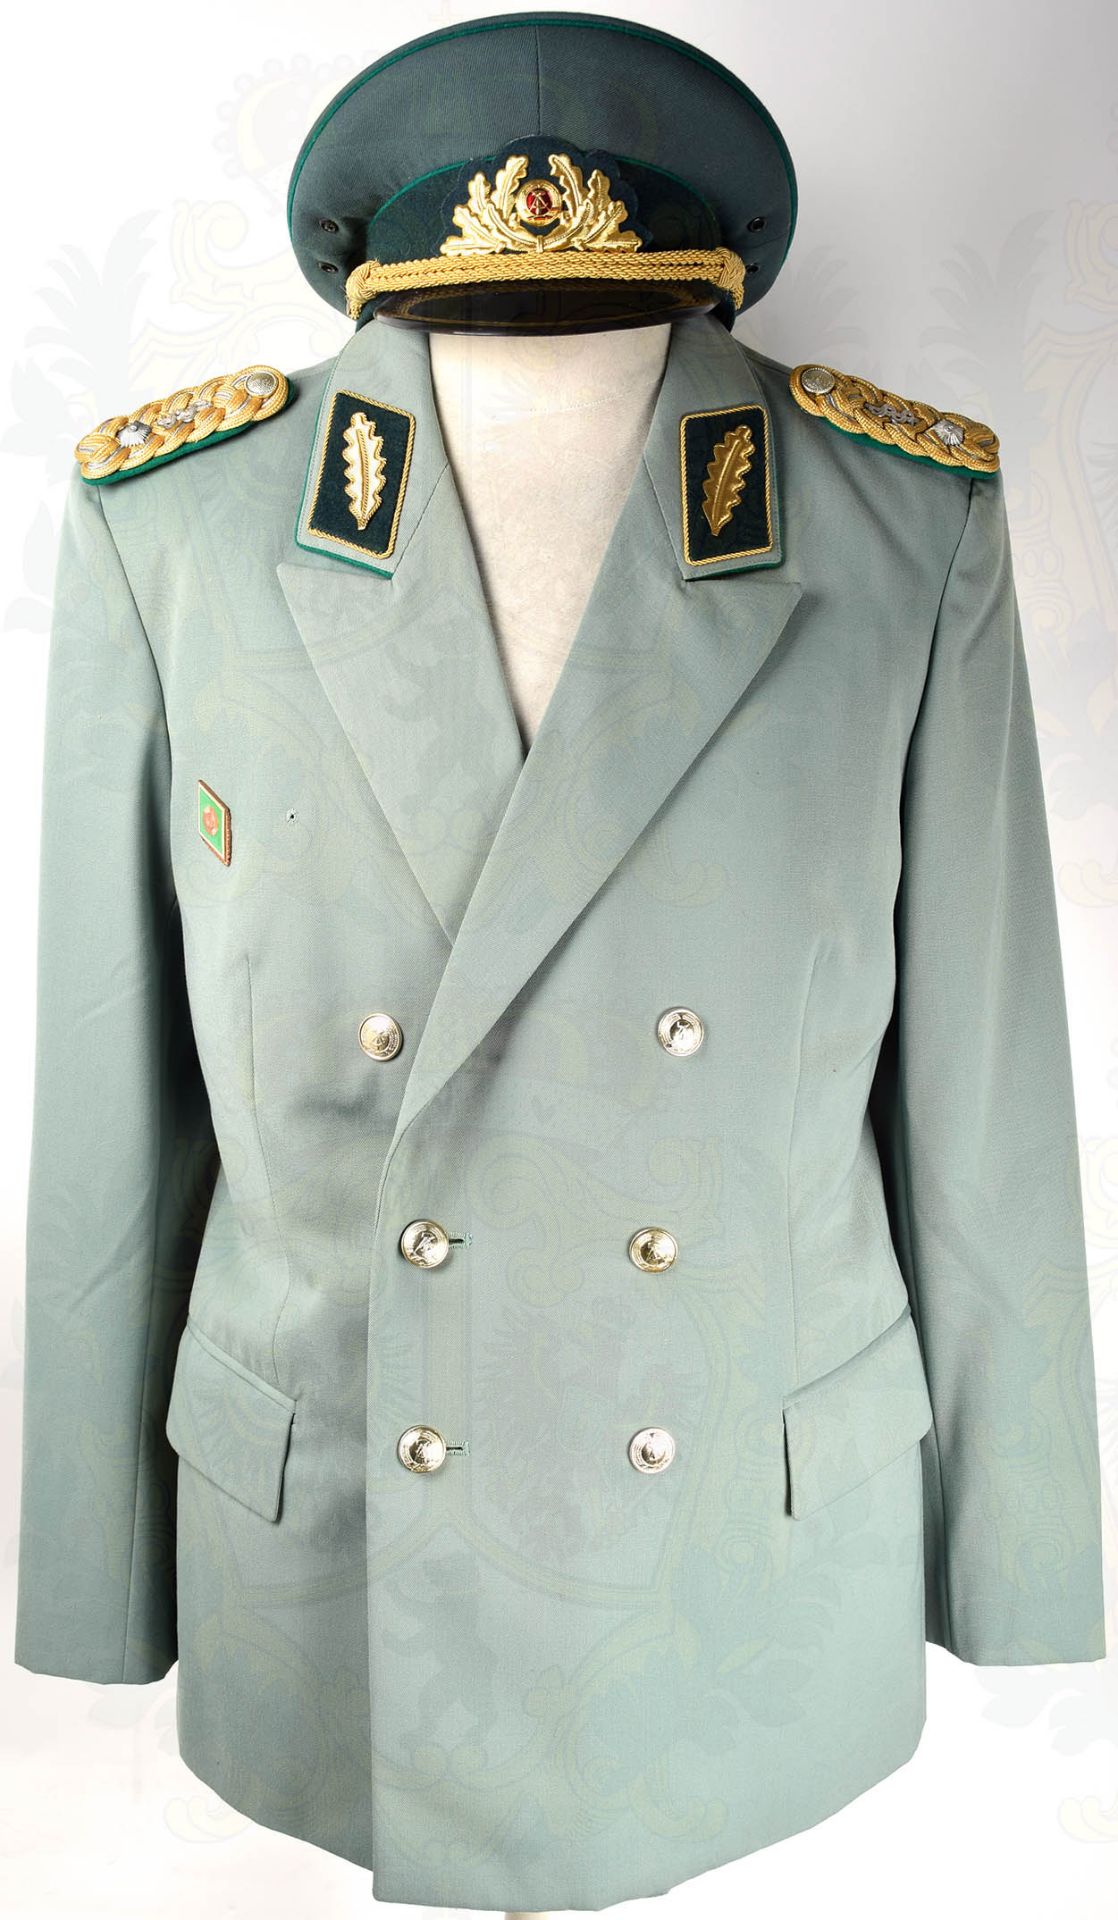 GESELLSCHAFTSUNIFORM GENERALMAJOR DER VP, Uniformrock aus graugrünen Tuch, mit 2 Taschen u. - Bild 3 aus 10